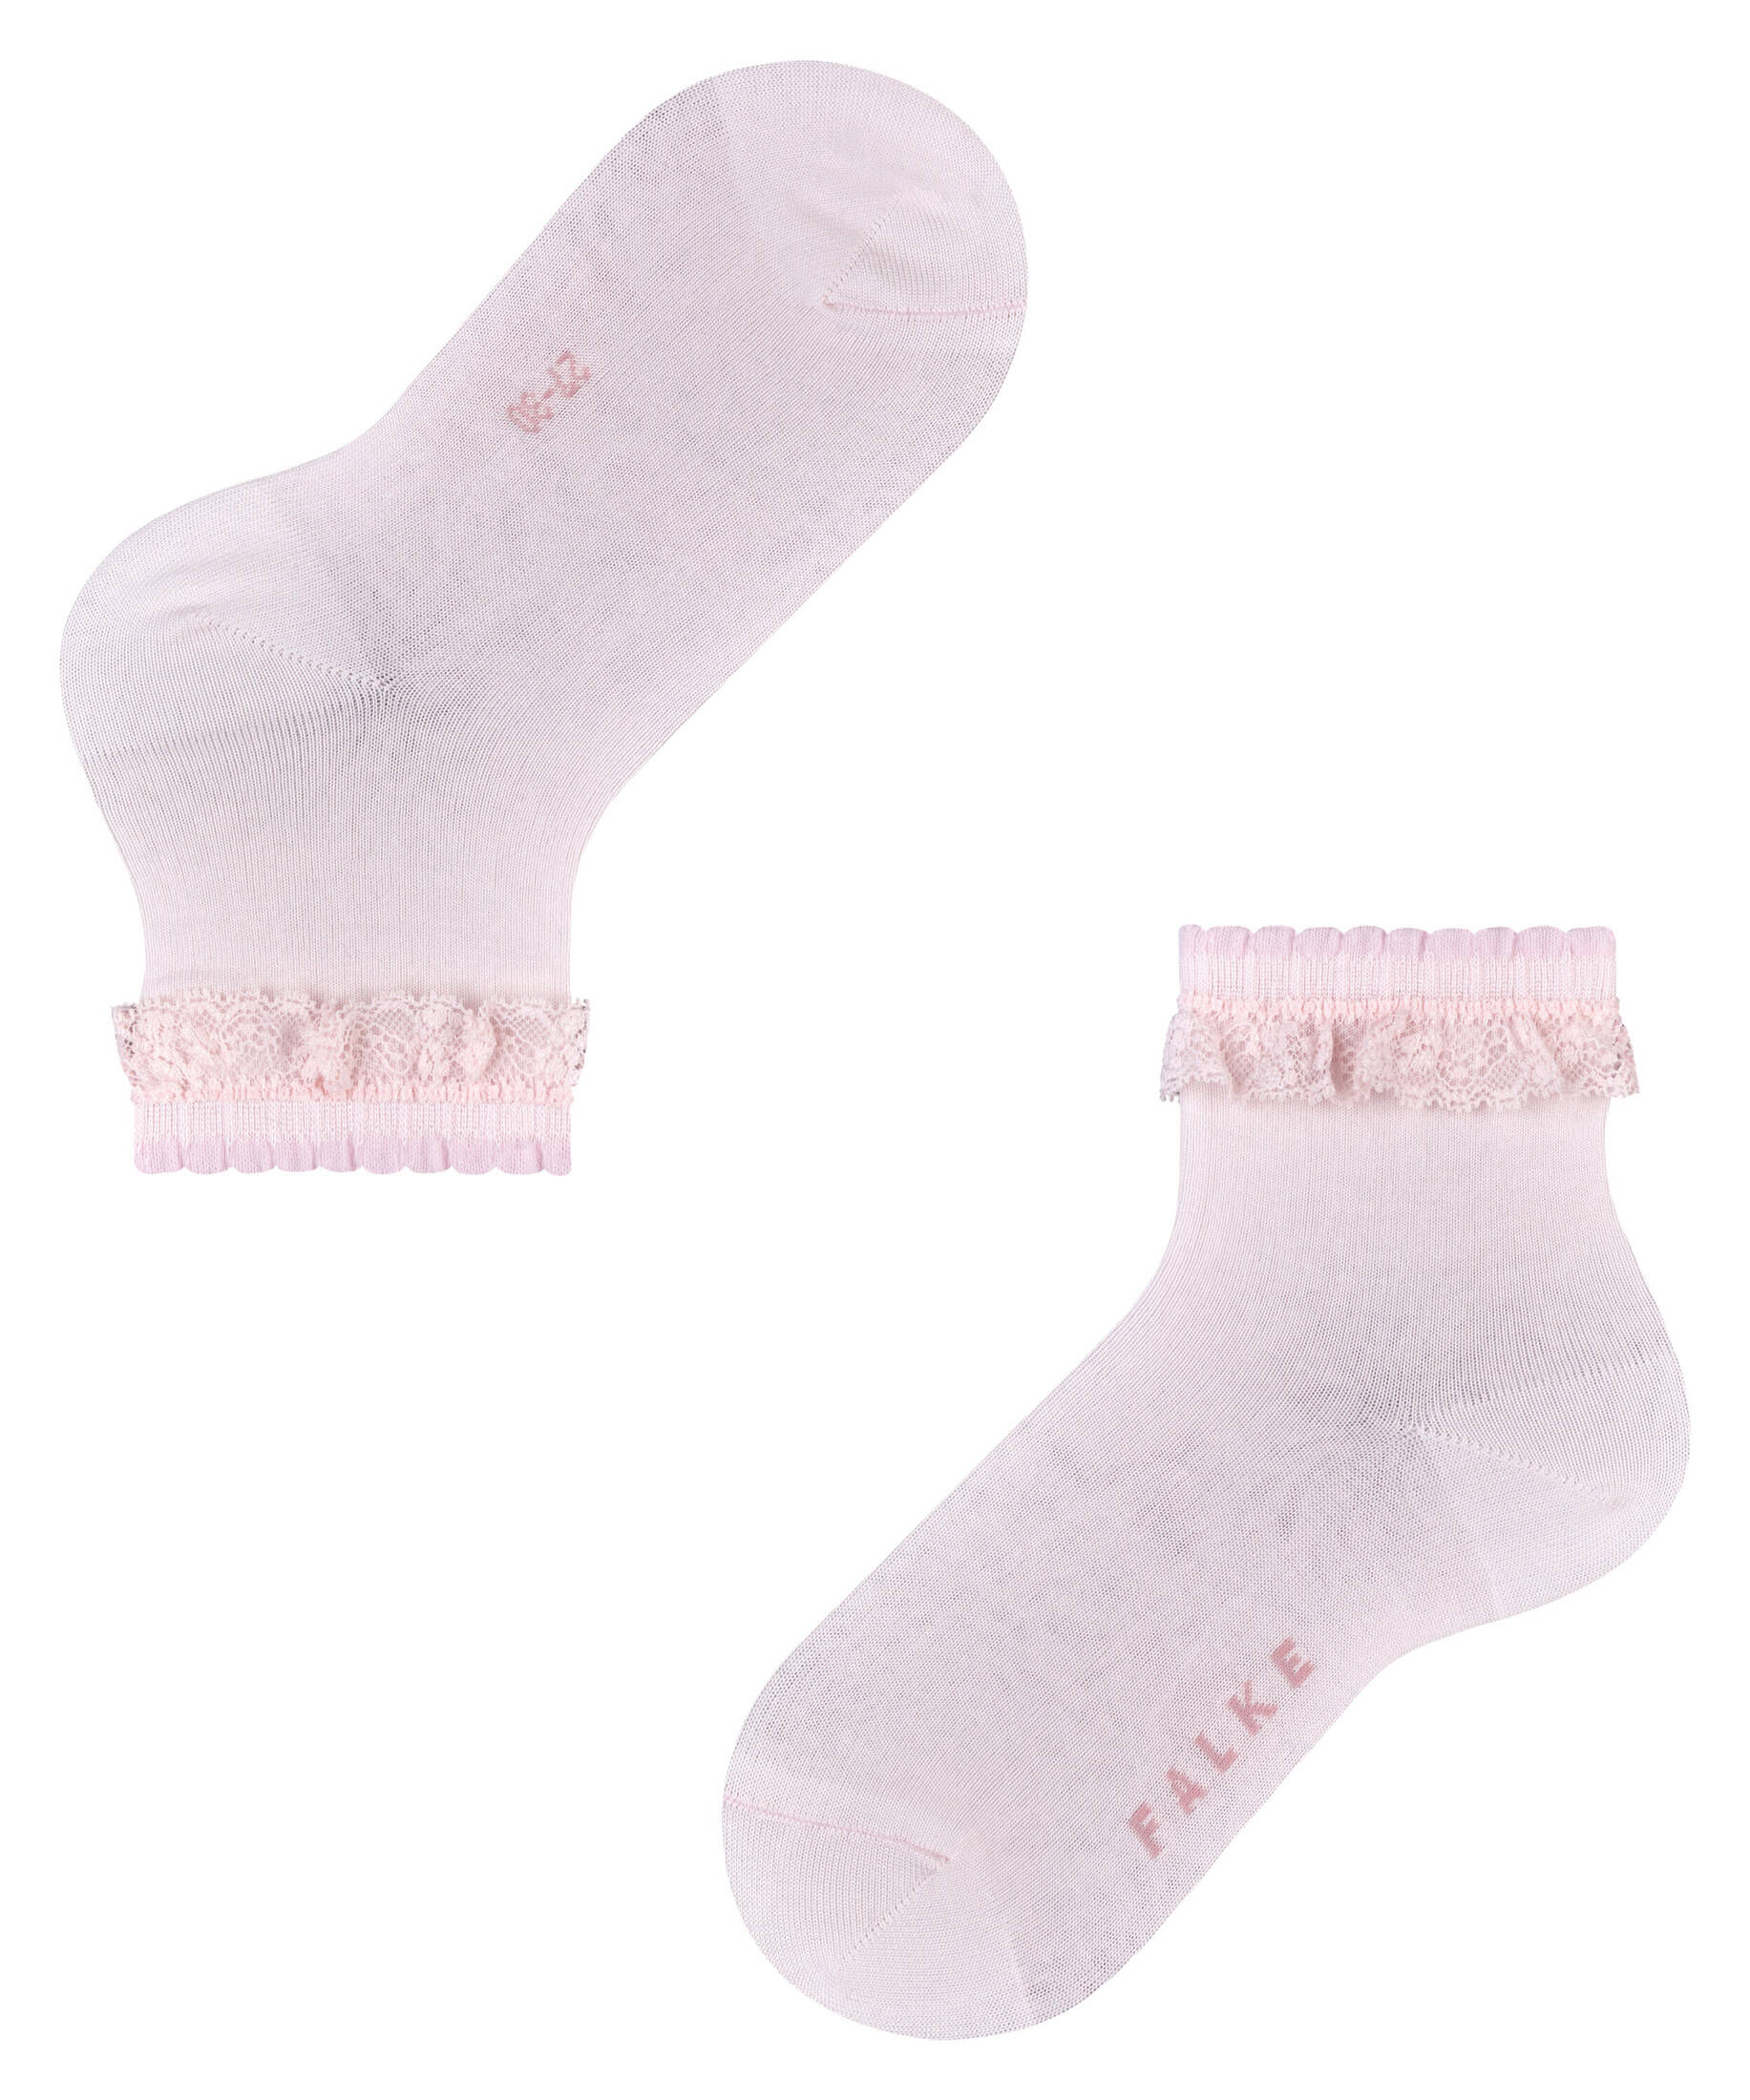 FALKE Romantic Net Kinder Socken Mädchensocken Kinder-Söckchen  Strümpfe 